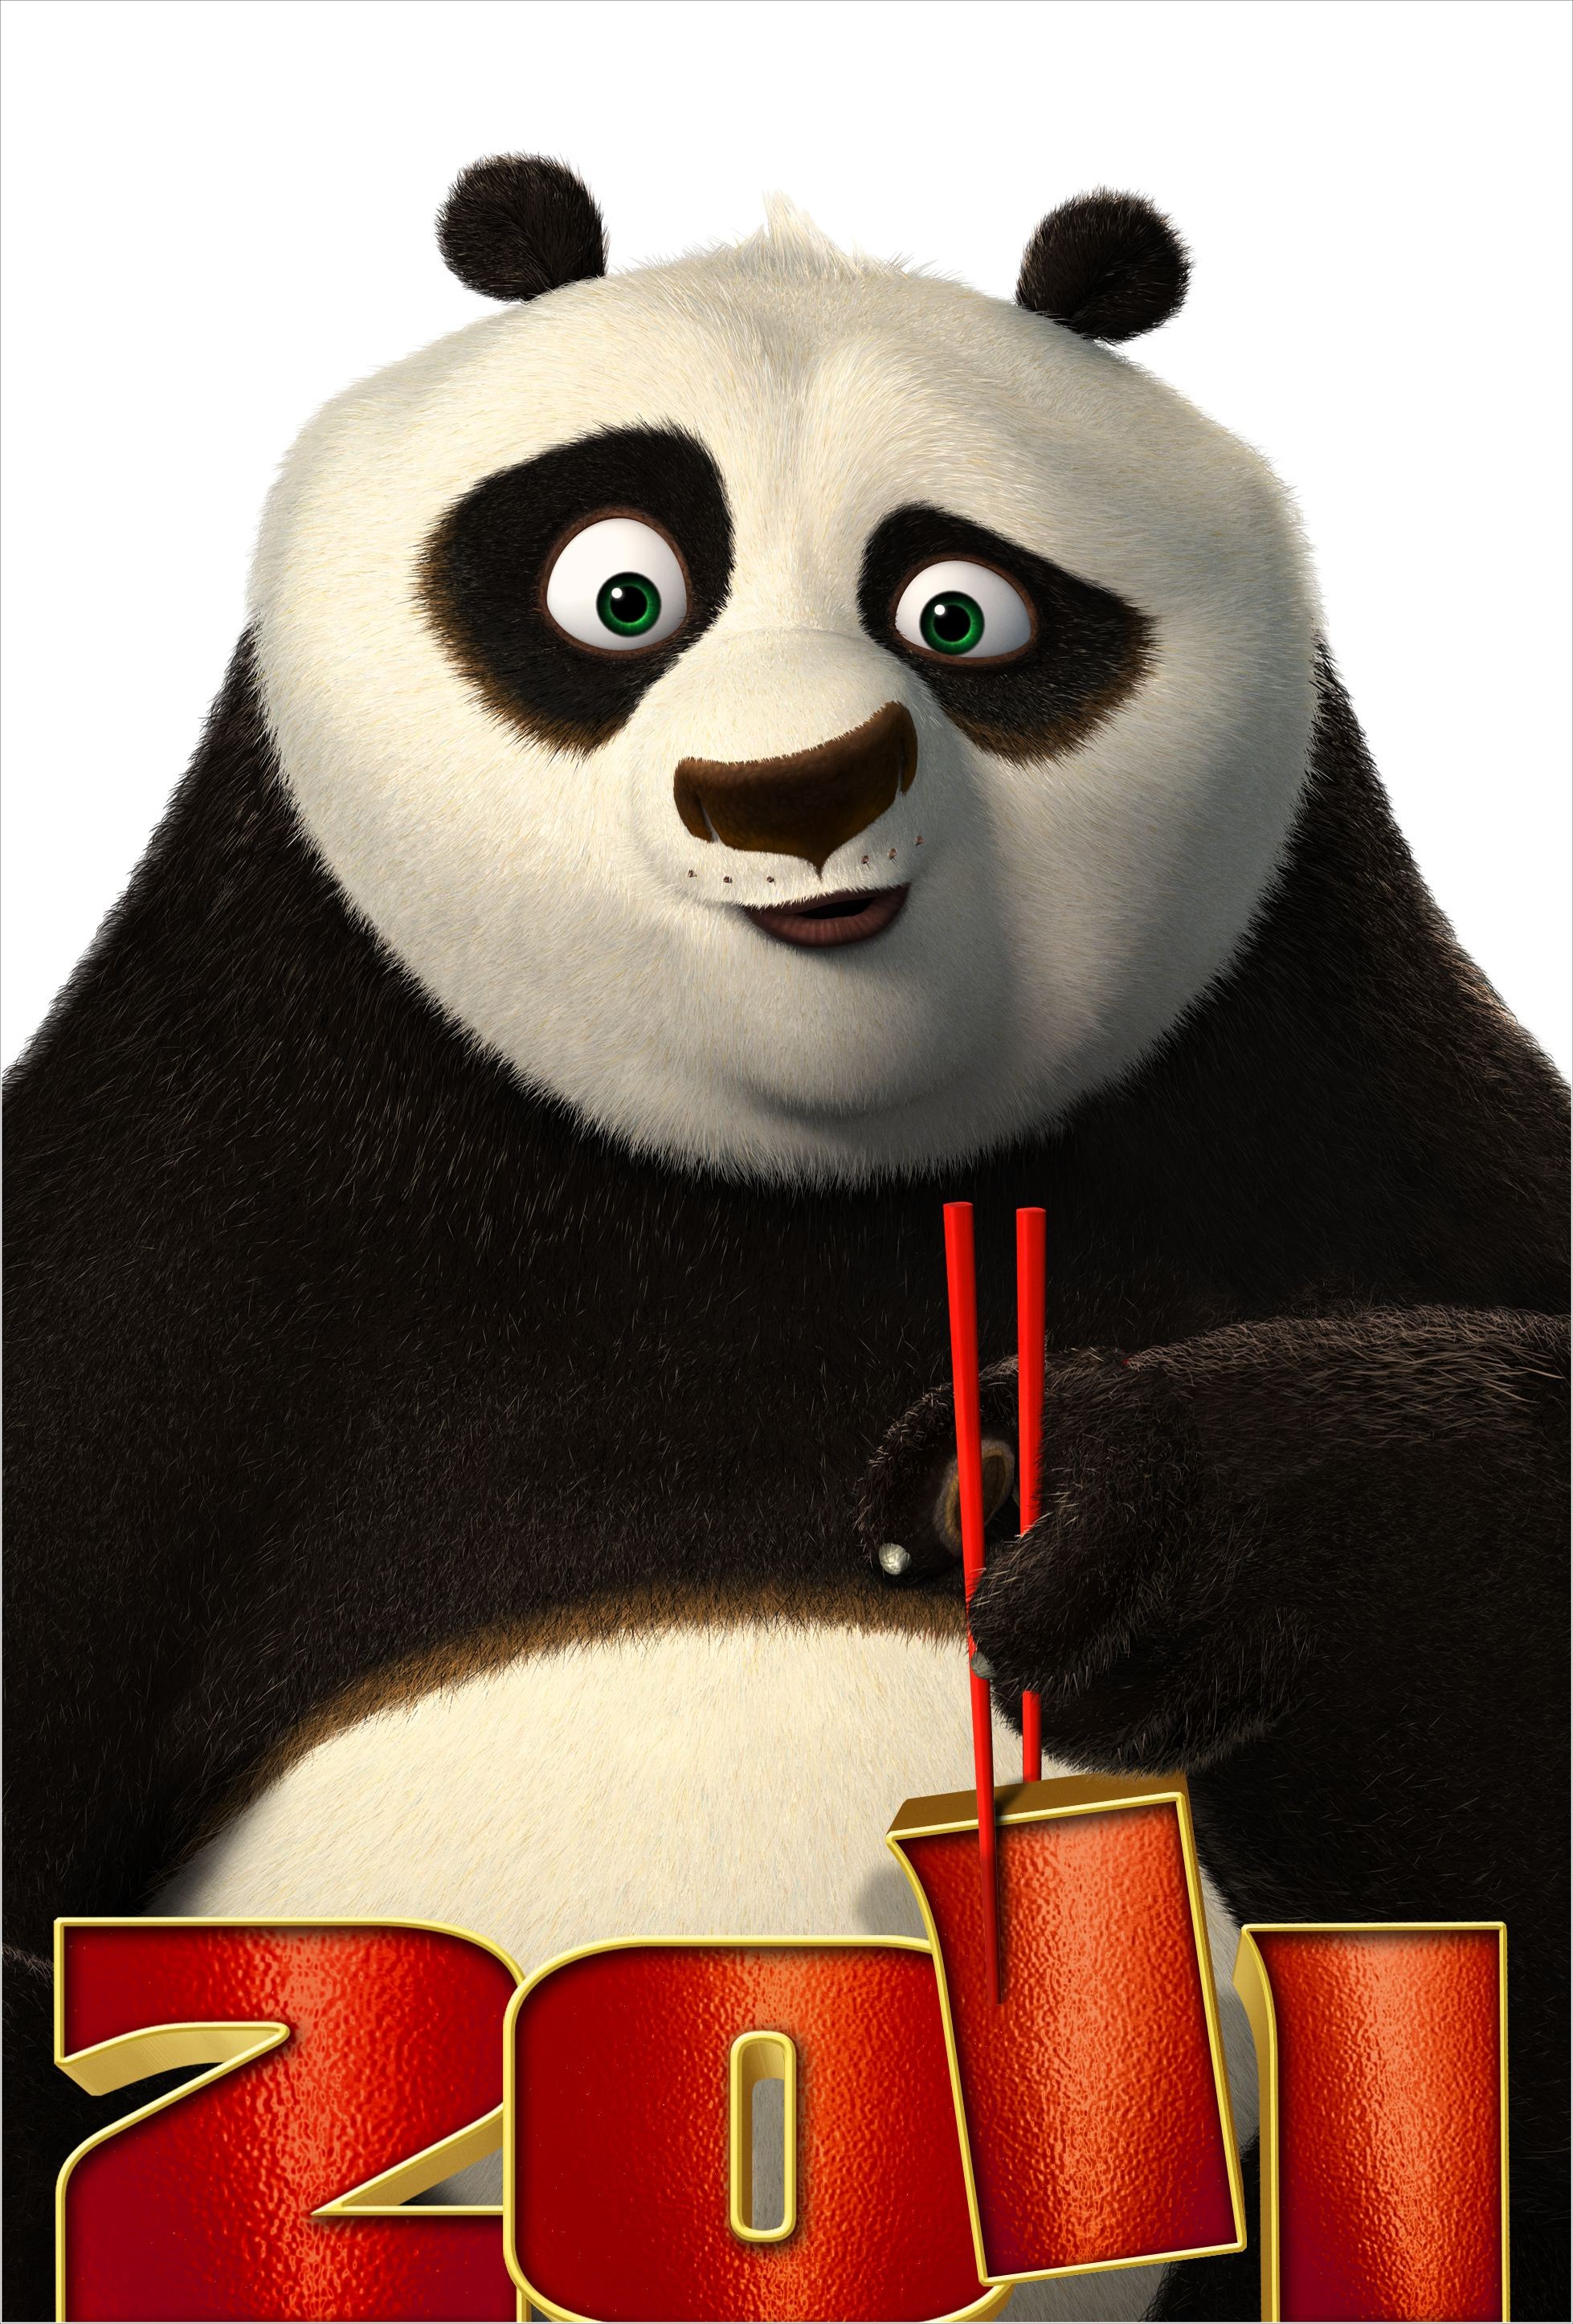 Kung Fu Panda 2 - Rotten Tomatoes